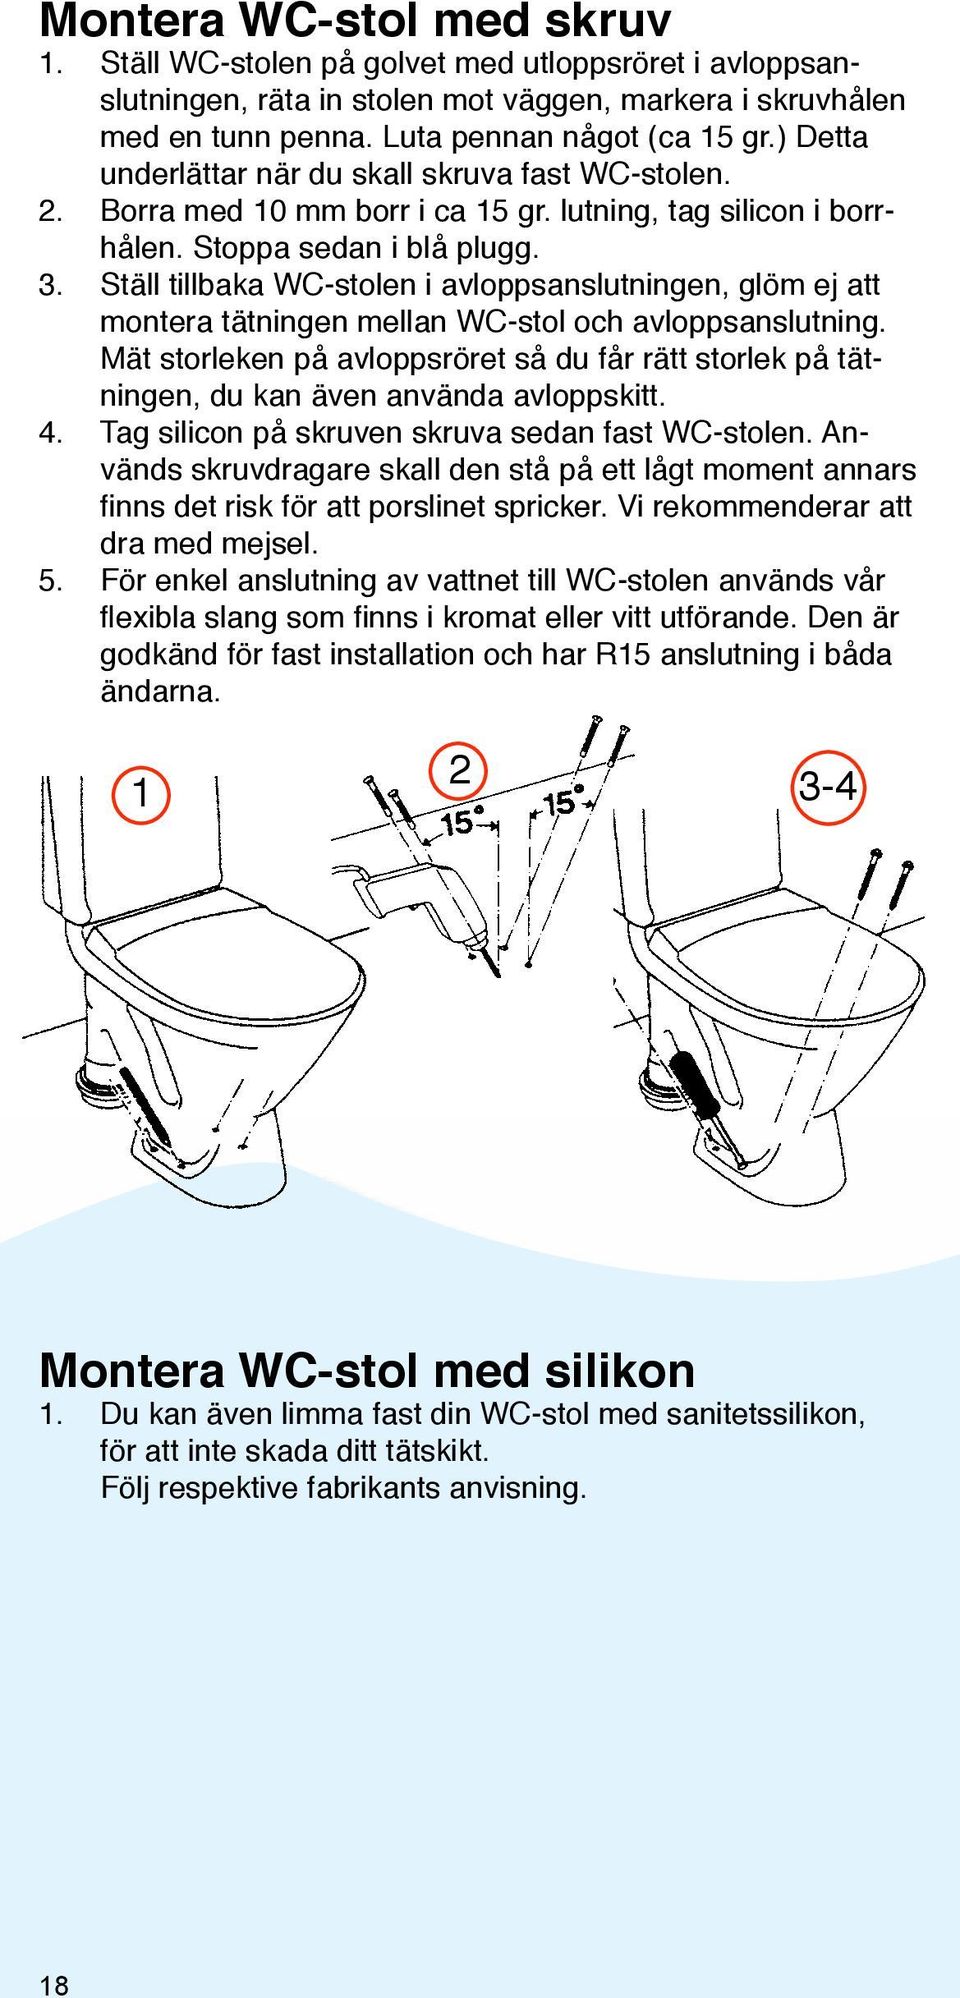 Ställ tillbaka WC-stolen i avloppsanslutningen, glöm ej att montera tätningen mellan WC-stol och avloppsanslutning.